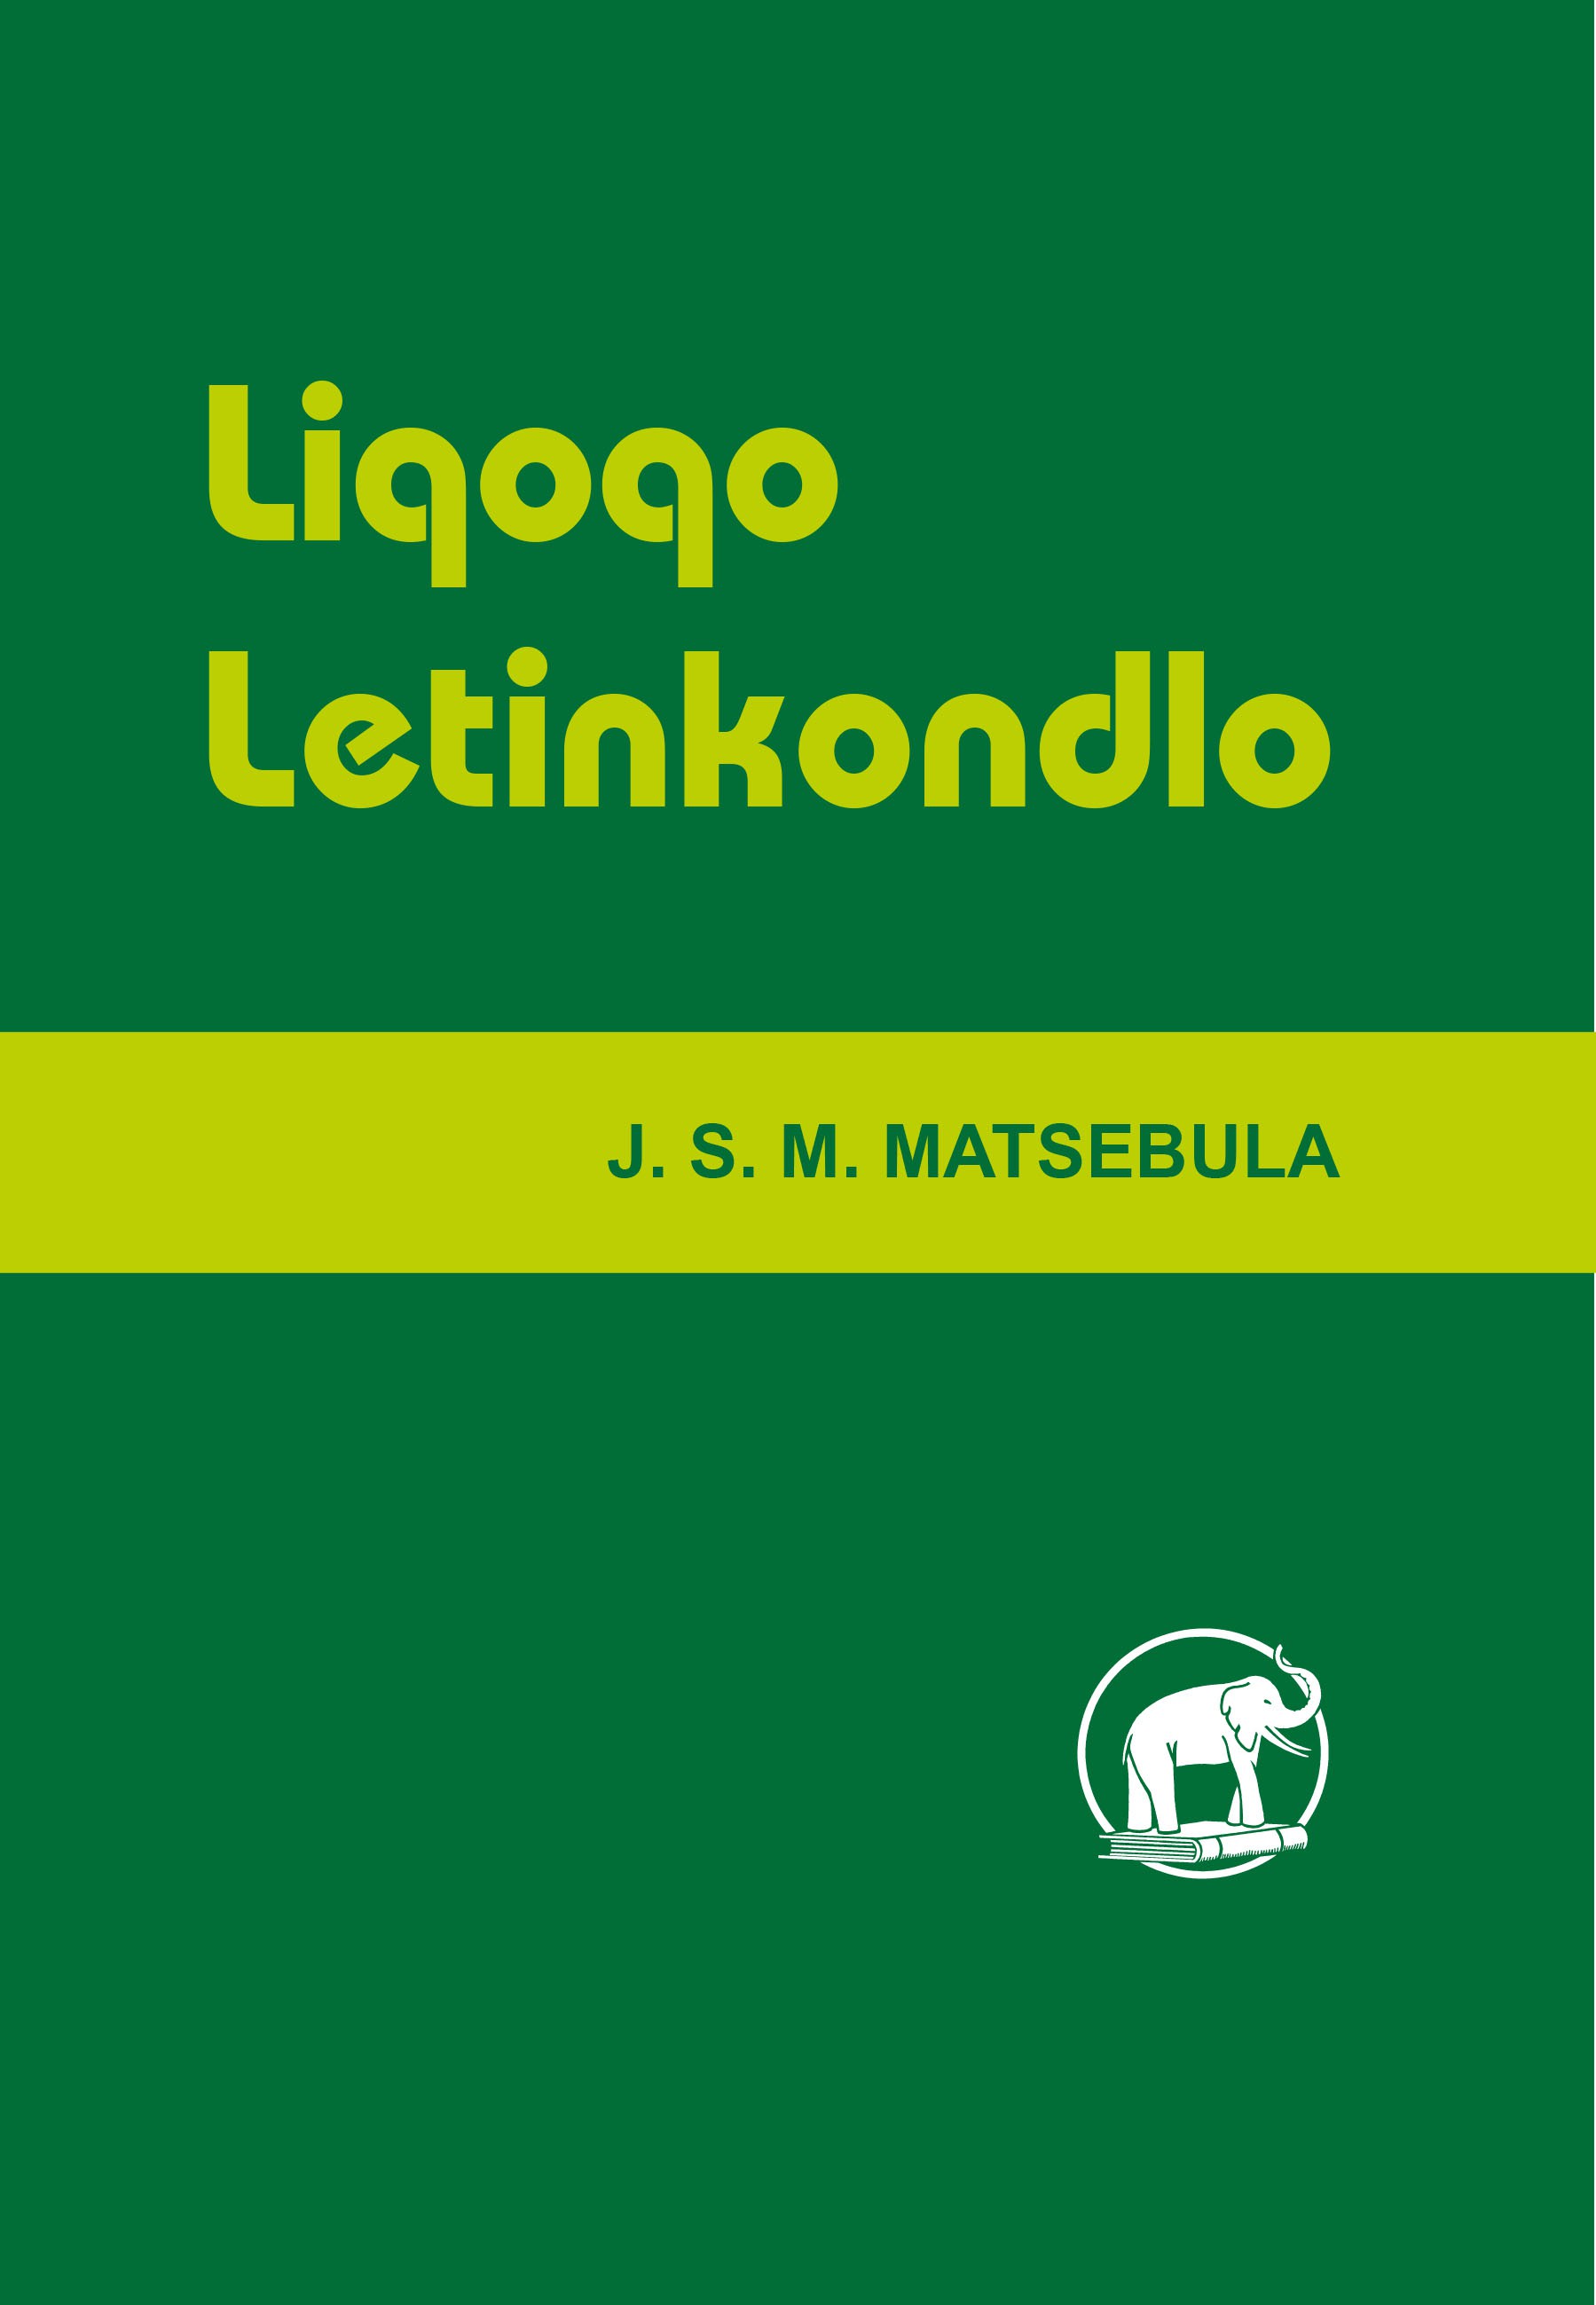 LIQOQO LETINKONDLO Cover